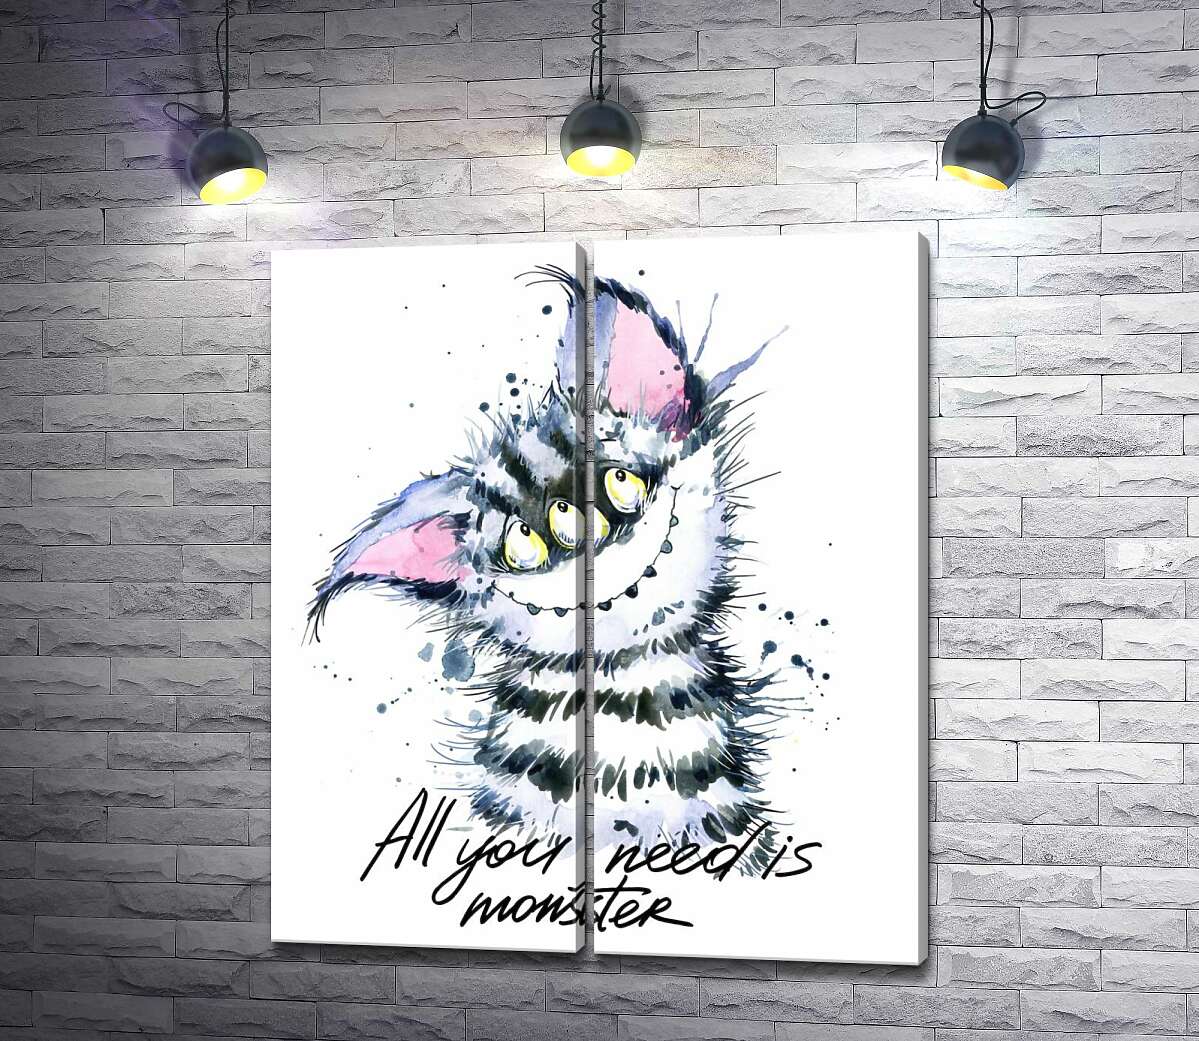 модульная картина Полосатый монстр с кошачьей мордашкой и надписью "all you need is monster"